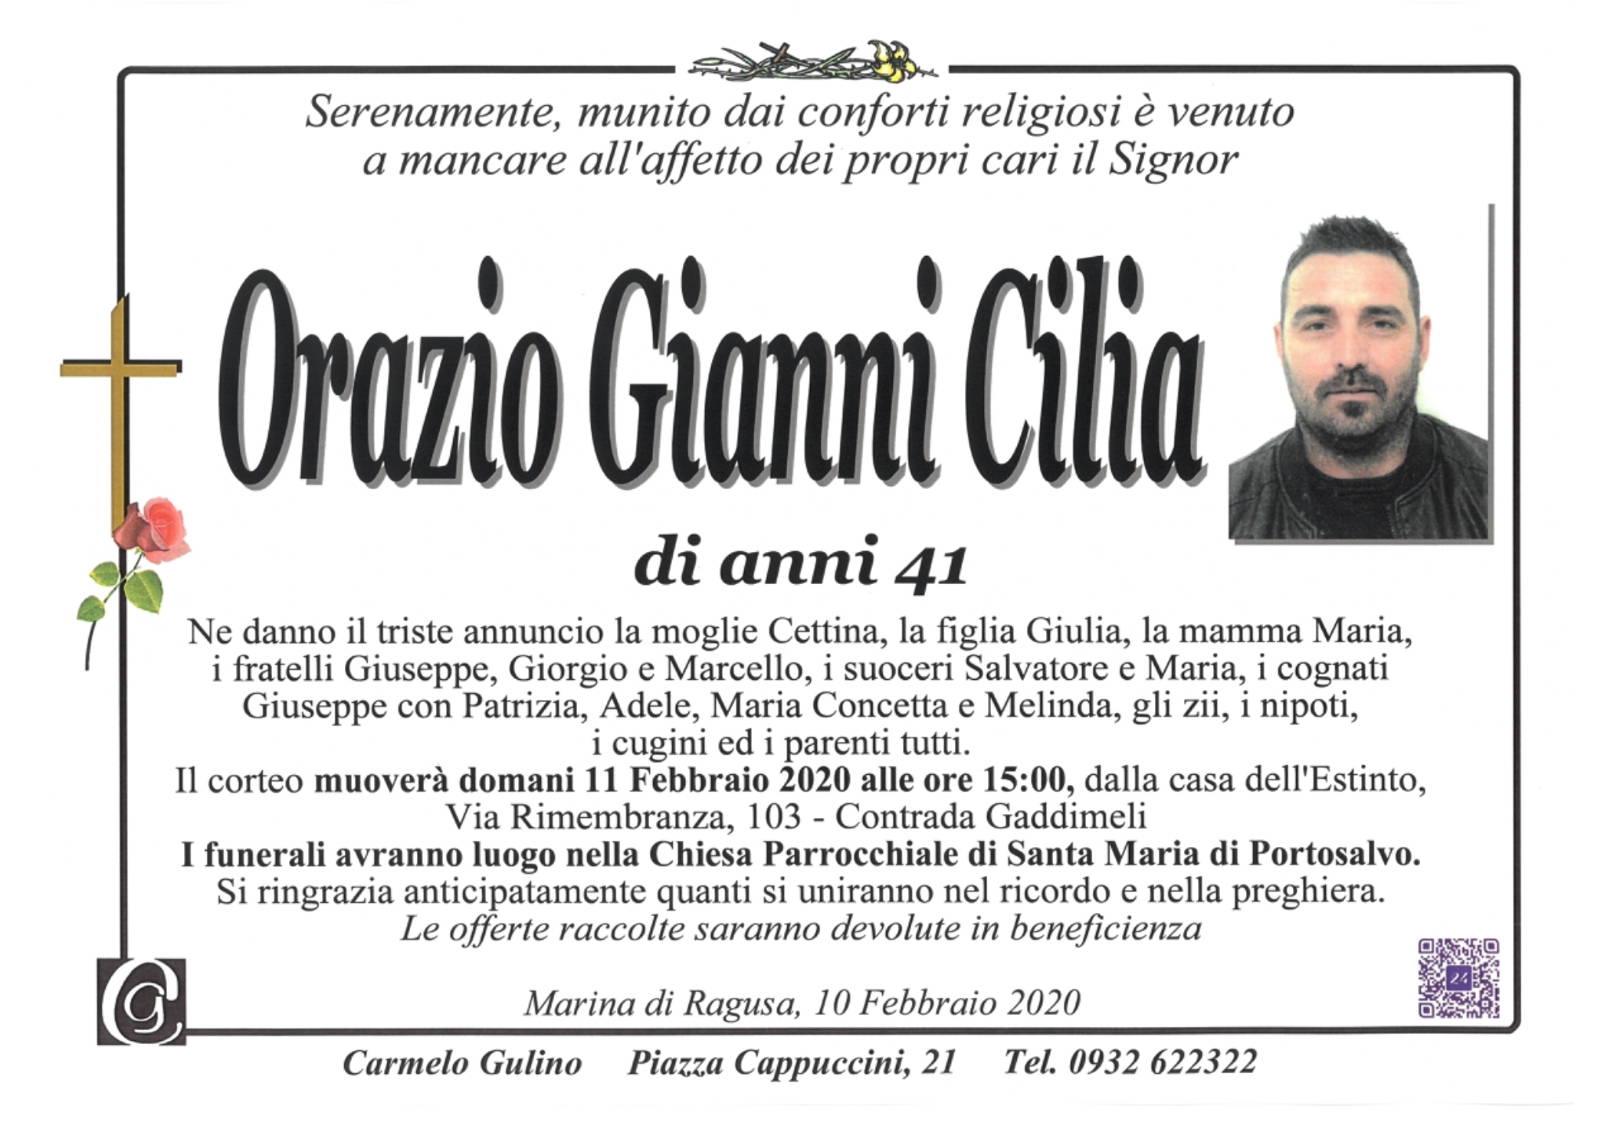 Orazio Gianni Cilia